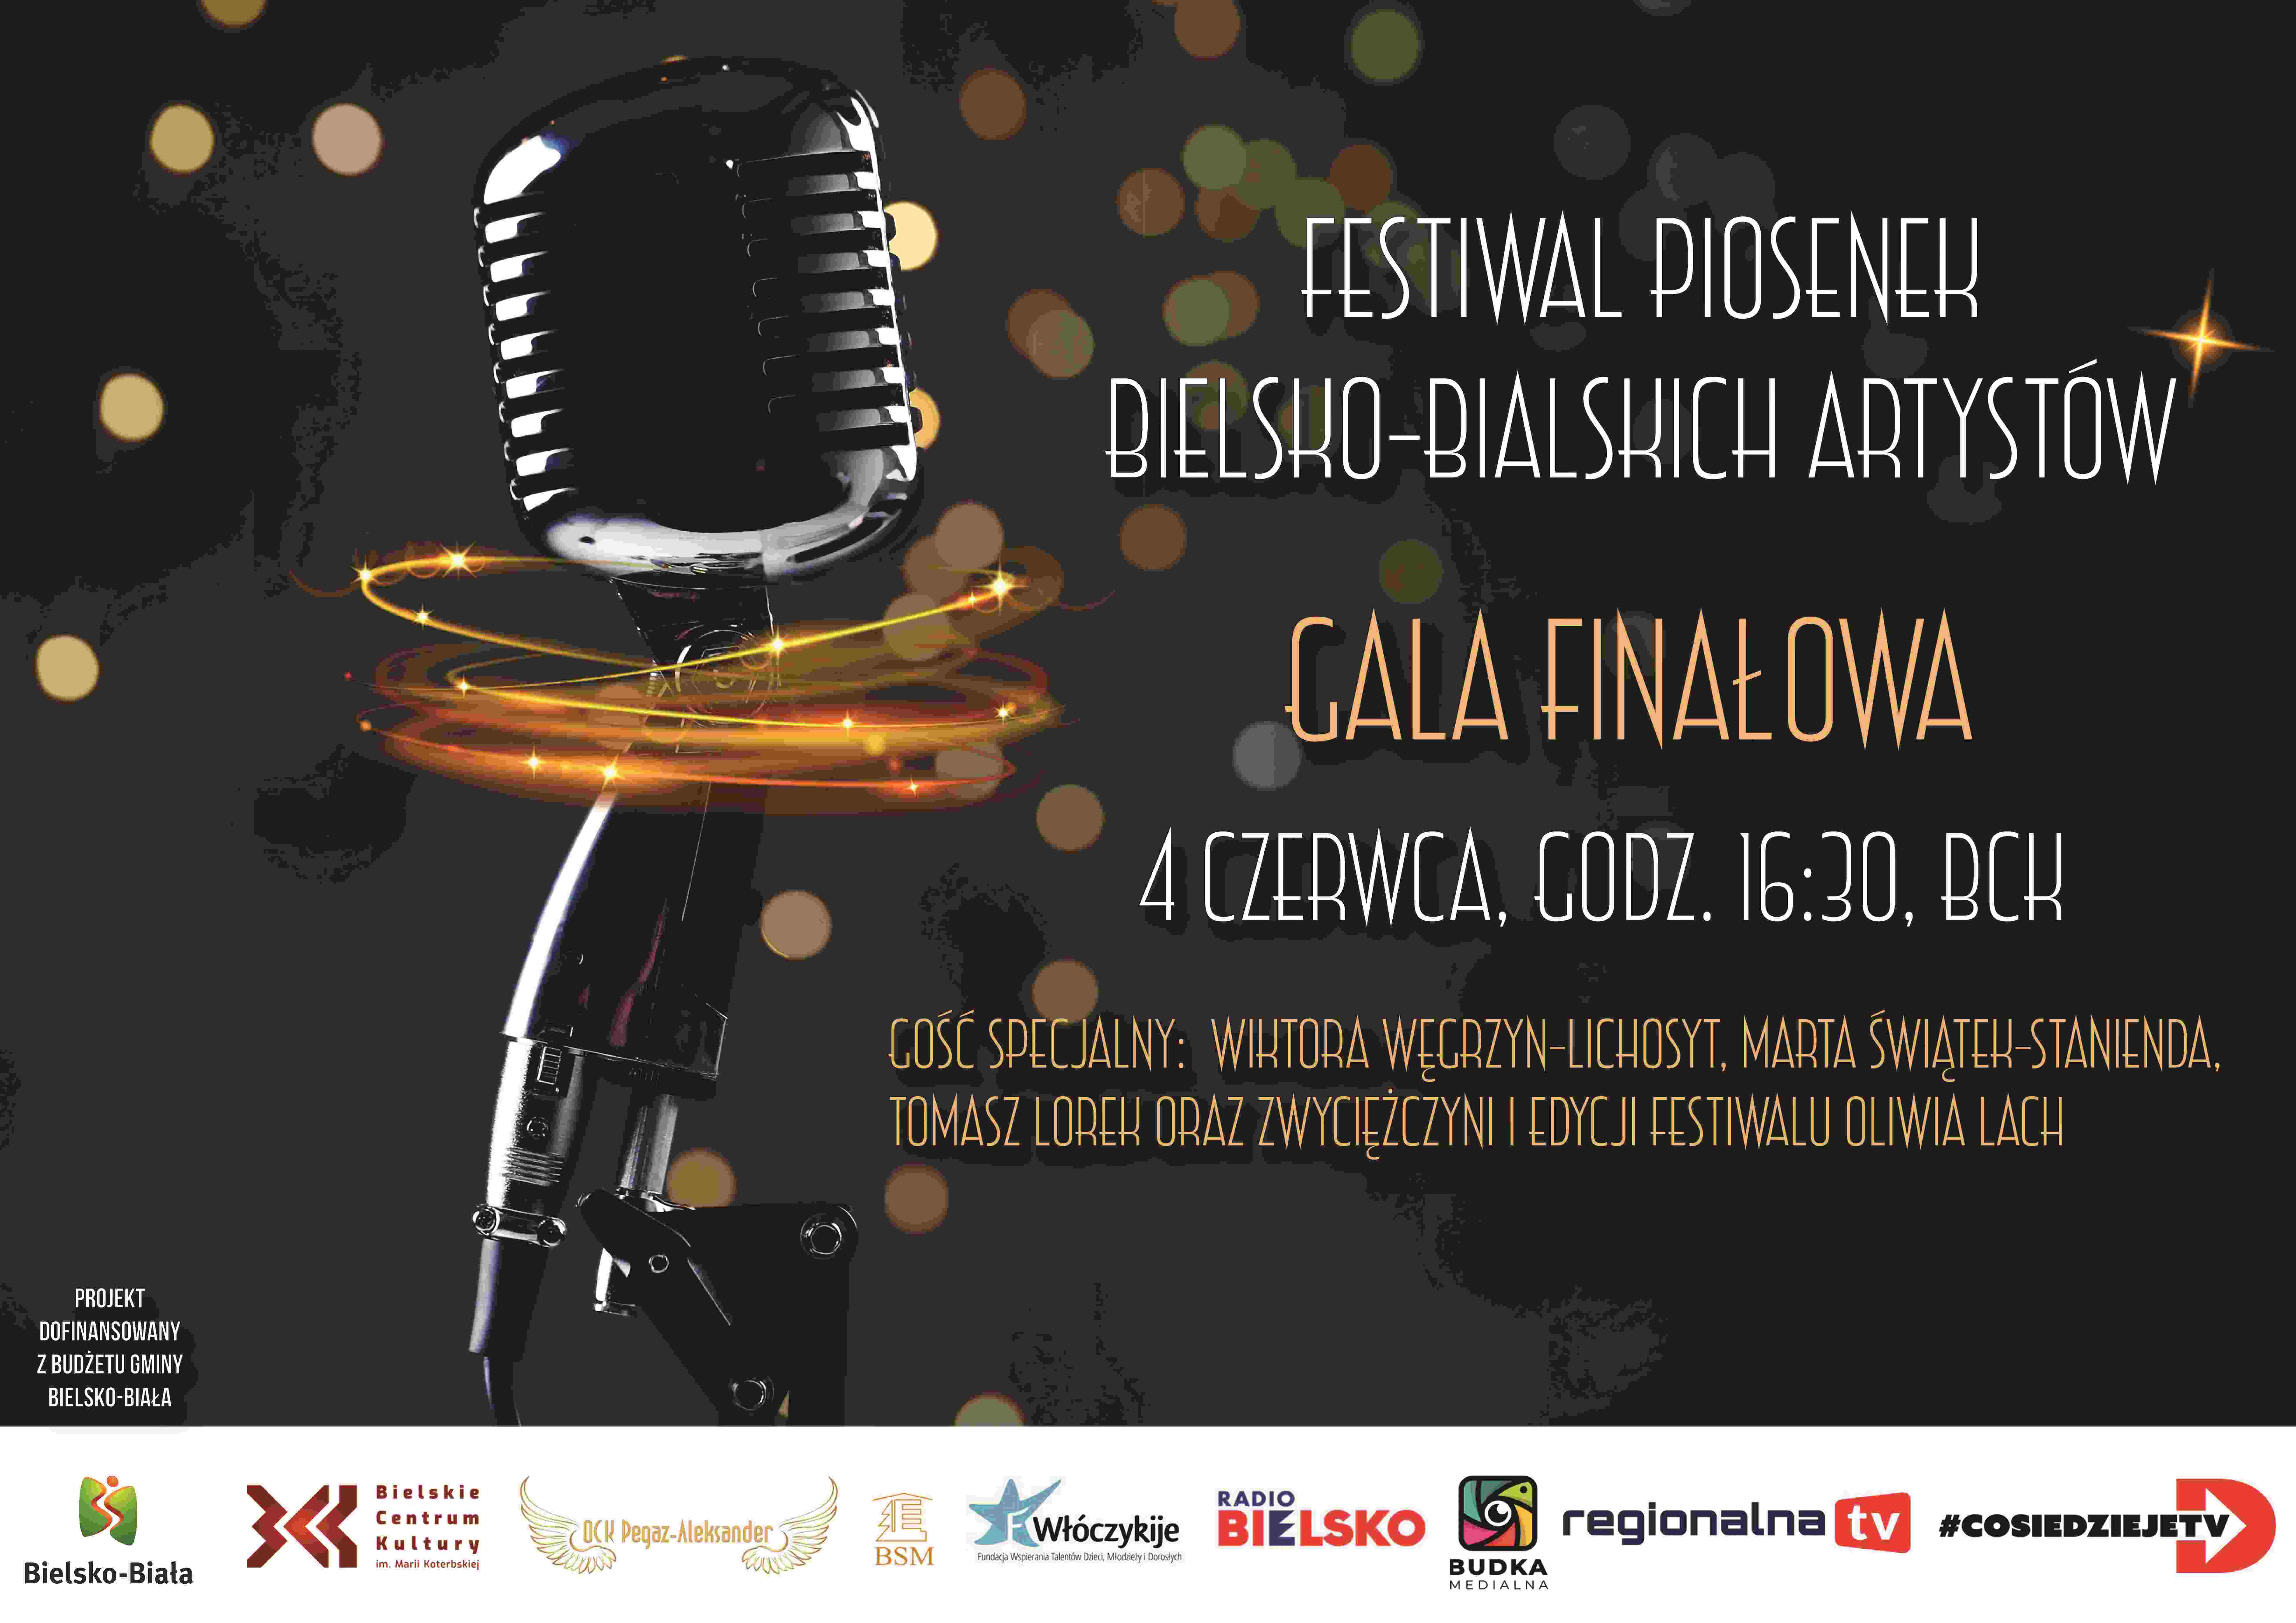  2. Festiwal Piosenek Bielsko-Bialskich Artystów Na zdjęciu plakat koncertu